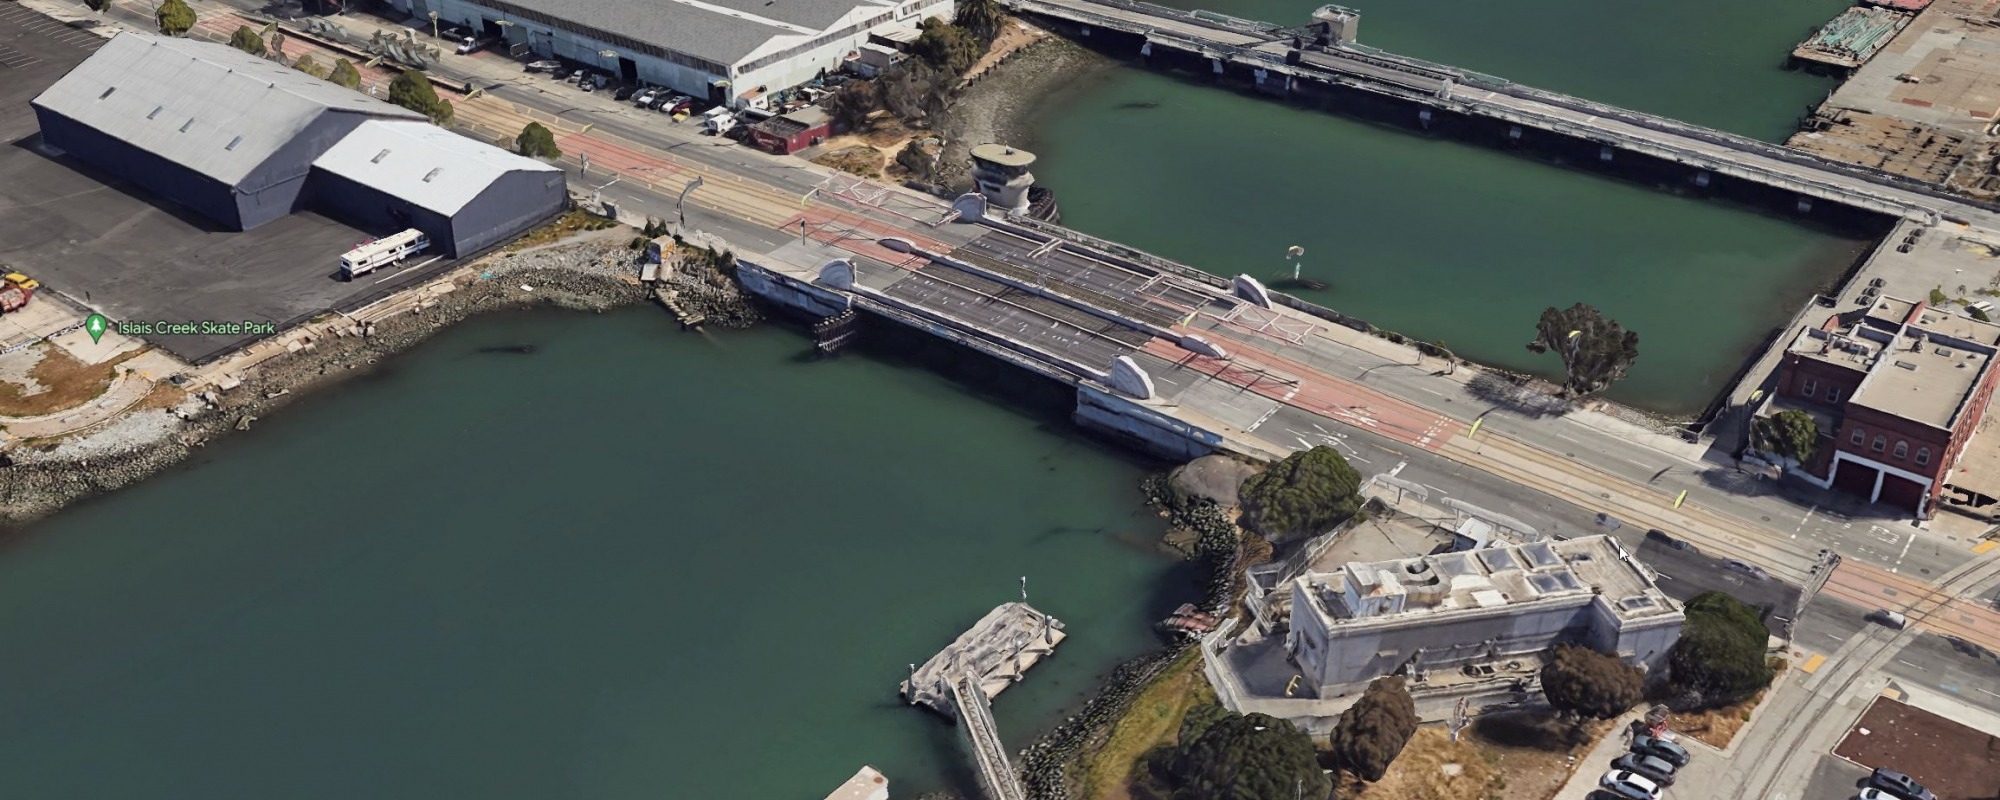 Google Earth Aerial View of the Islais Creek Bridge